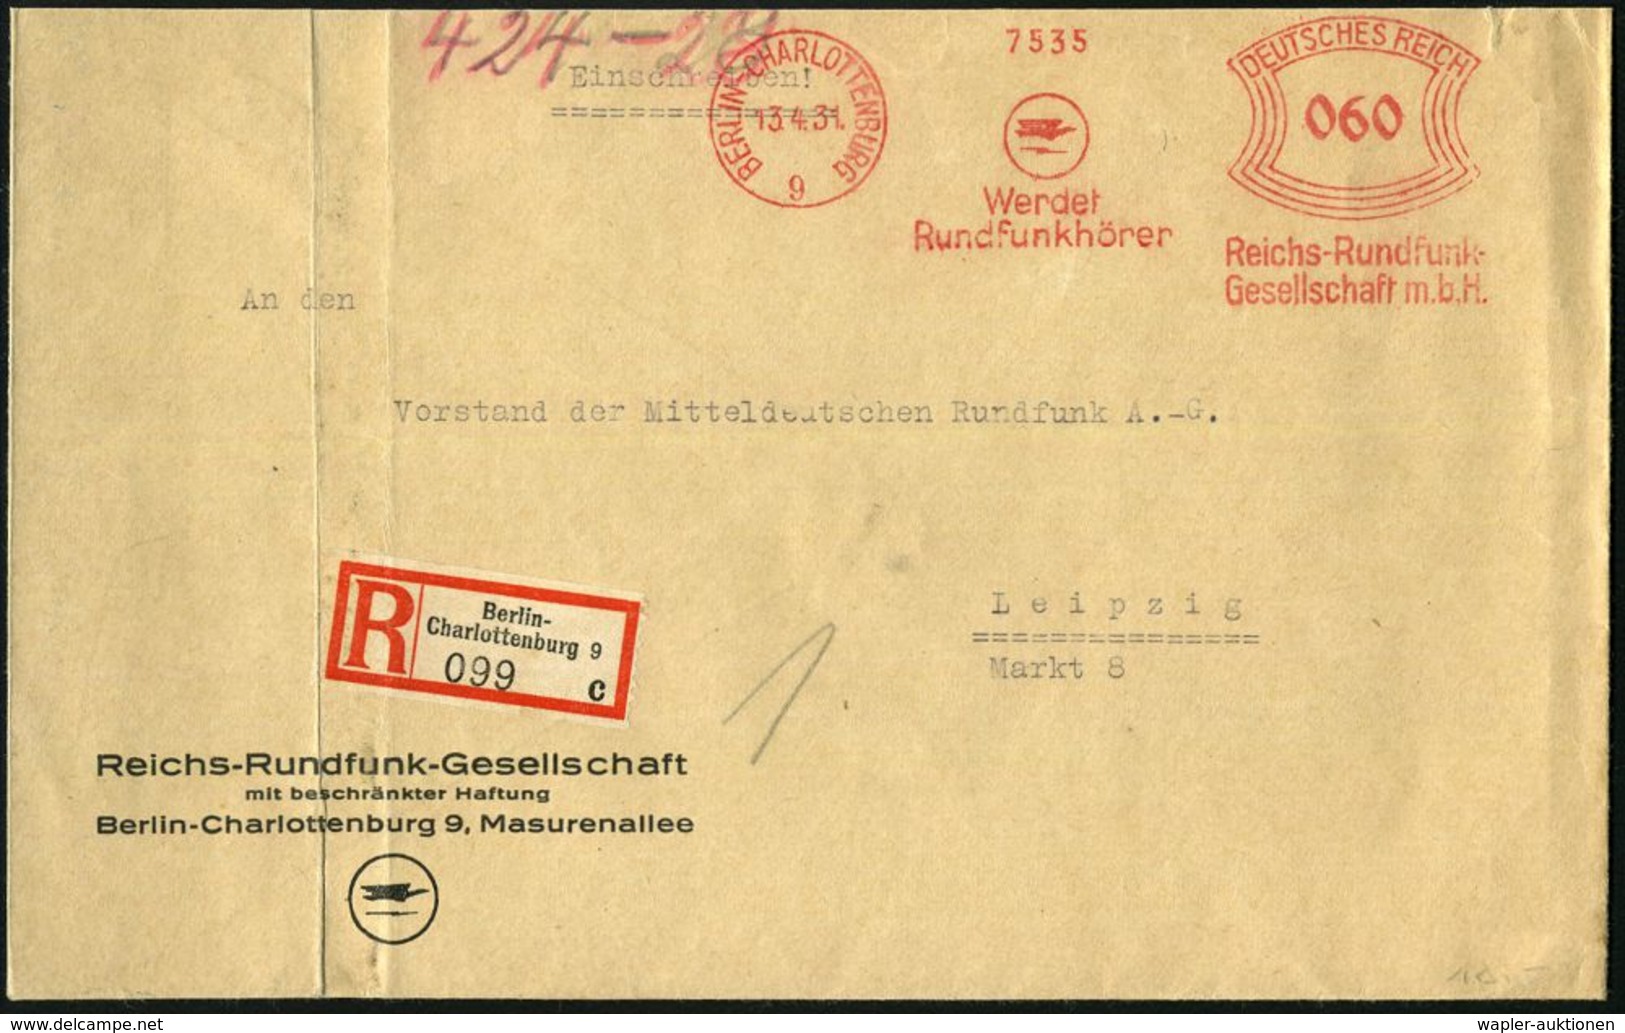 BERLIN-CHARLOTTENBURG/ 9/ Werdet/ Rundfunkhörer/ Reichs-Rundfunk-/ GmbH 1931 (13.4.) AFS 060 Pf. (Logo) Auf Motivgl. Vor - Ohne Zuordnung